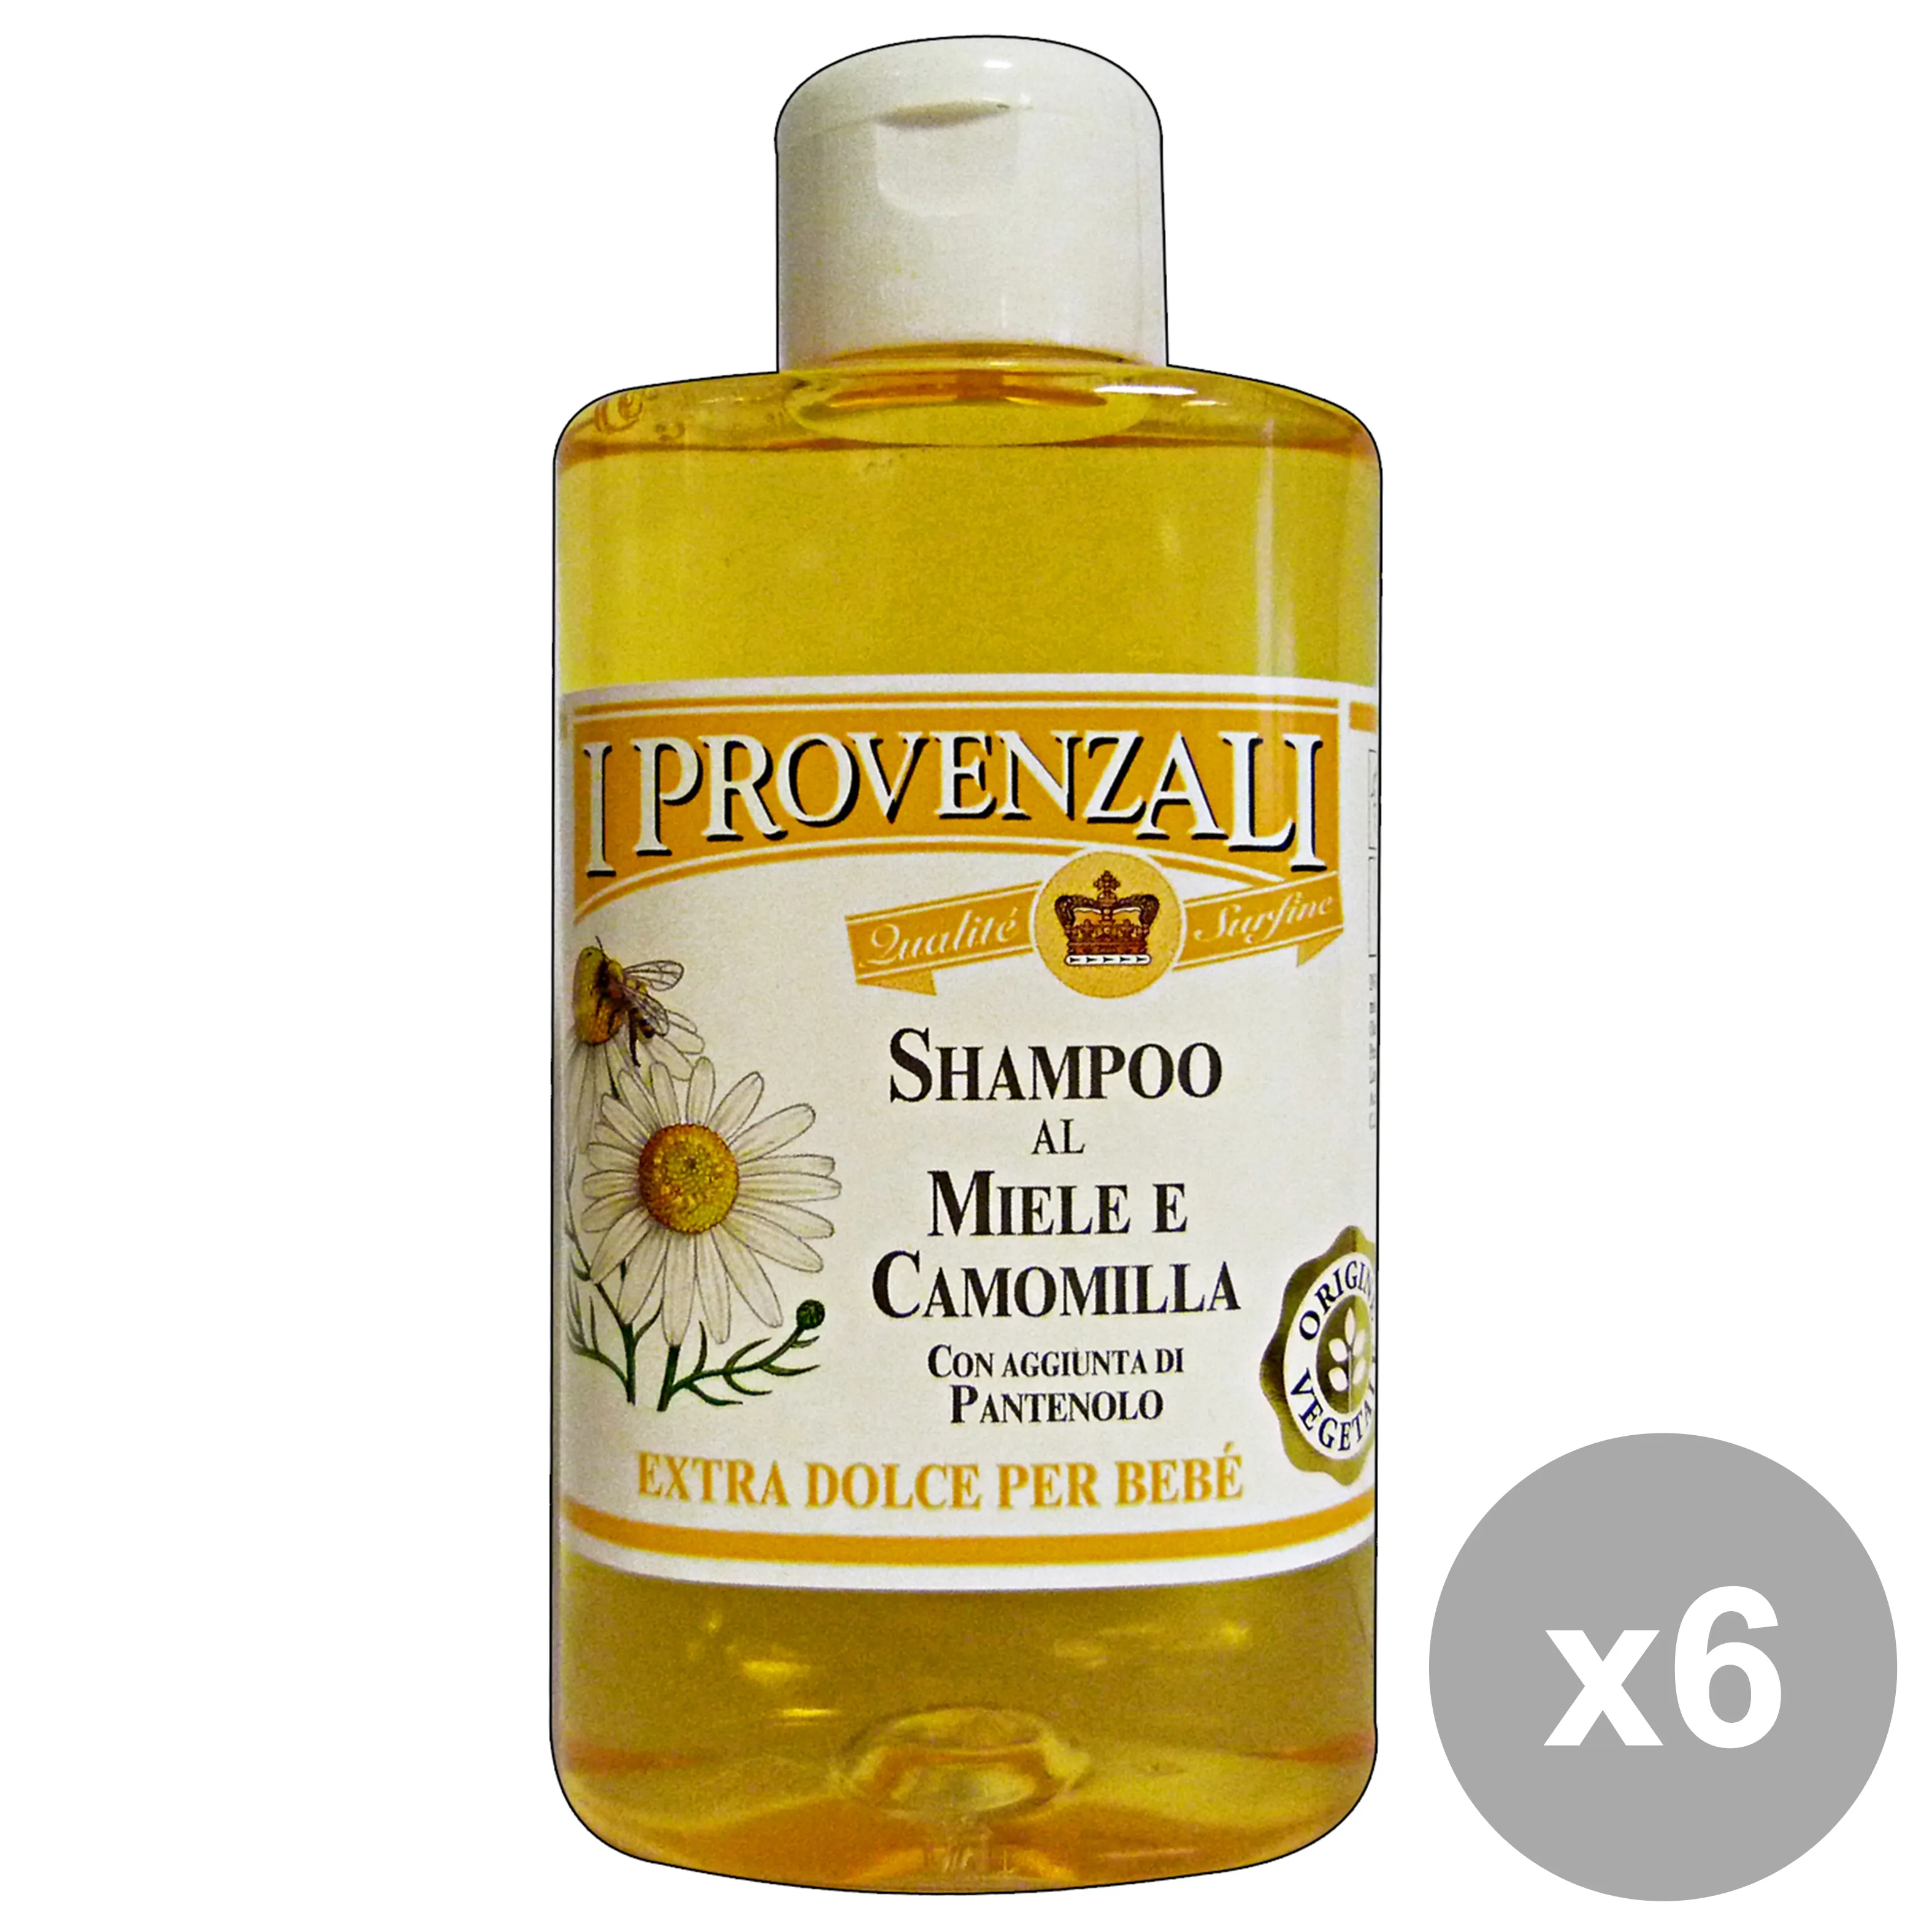 "Set 6 I PROVENZALI Shampoo MIELE-Camomilla BEBE' 250 Ml.  Prodotti per capelli"